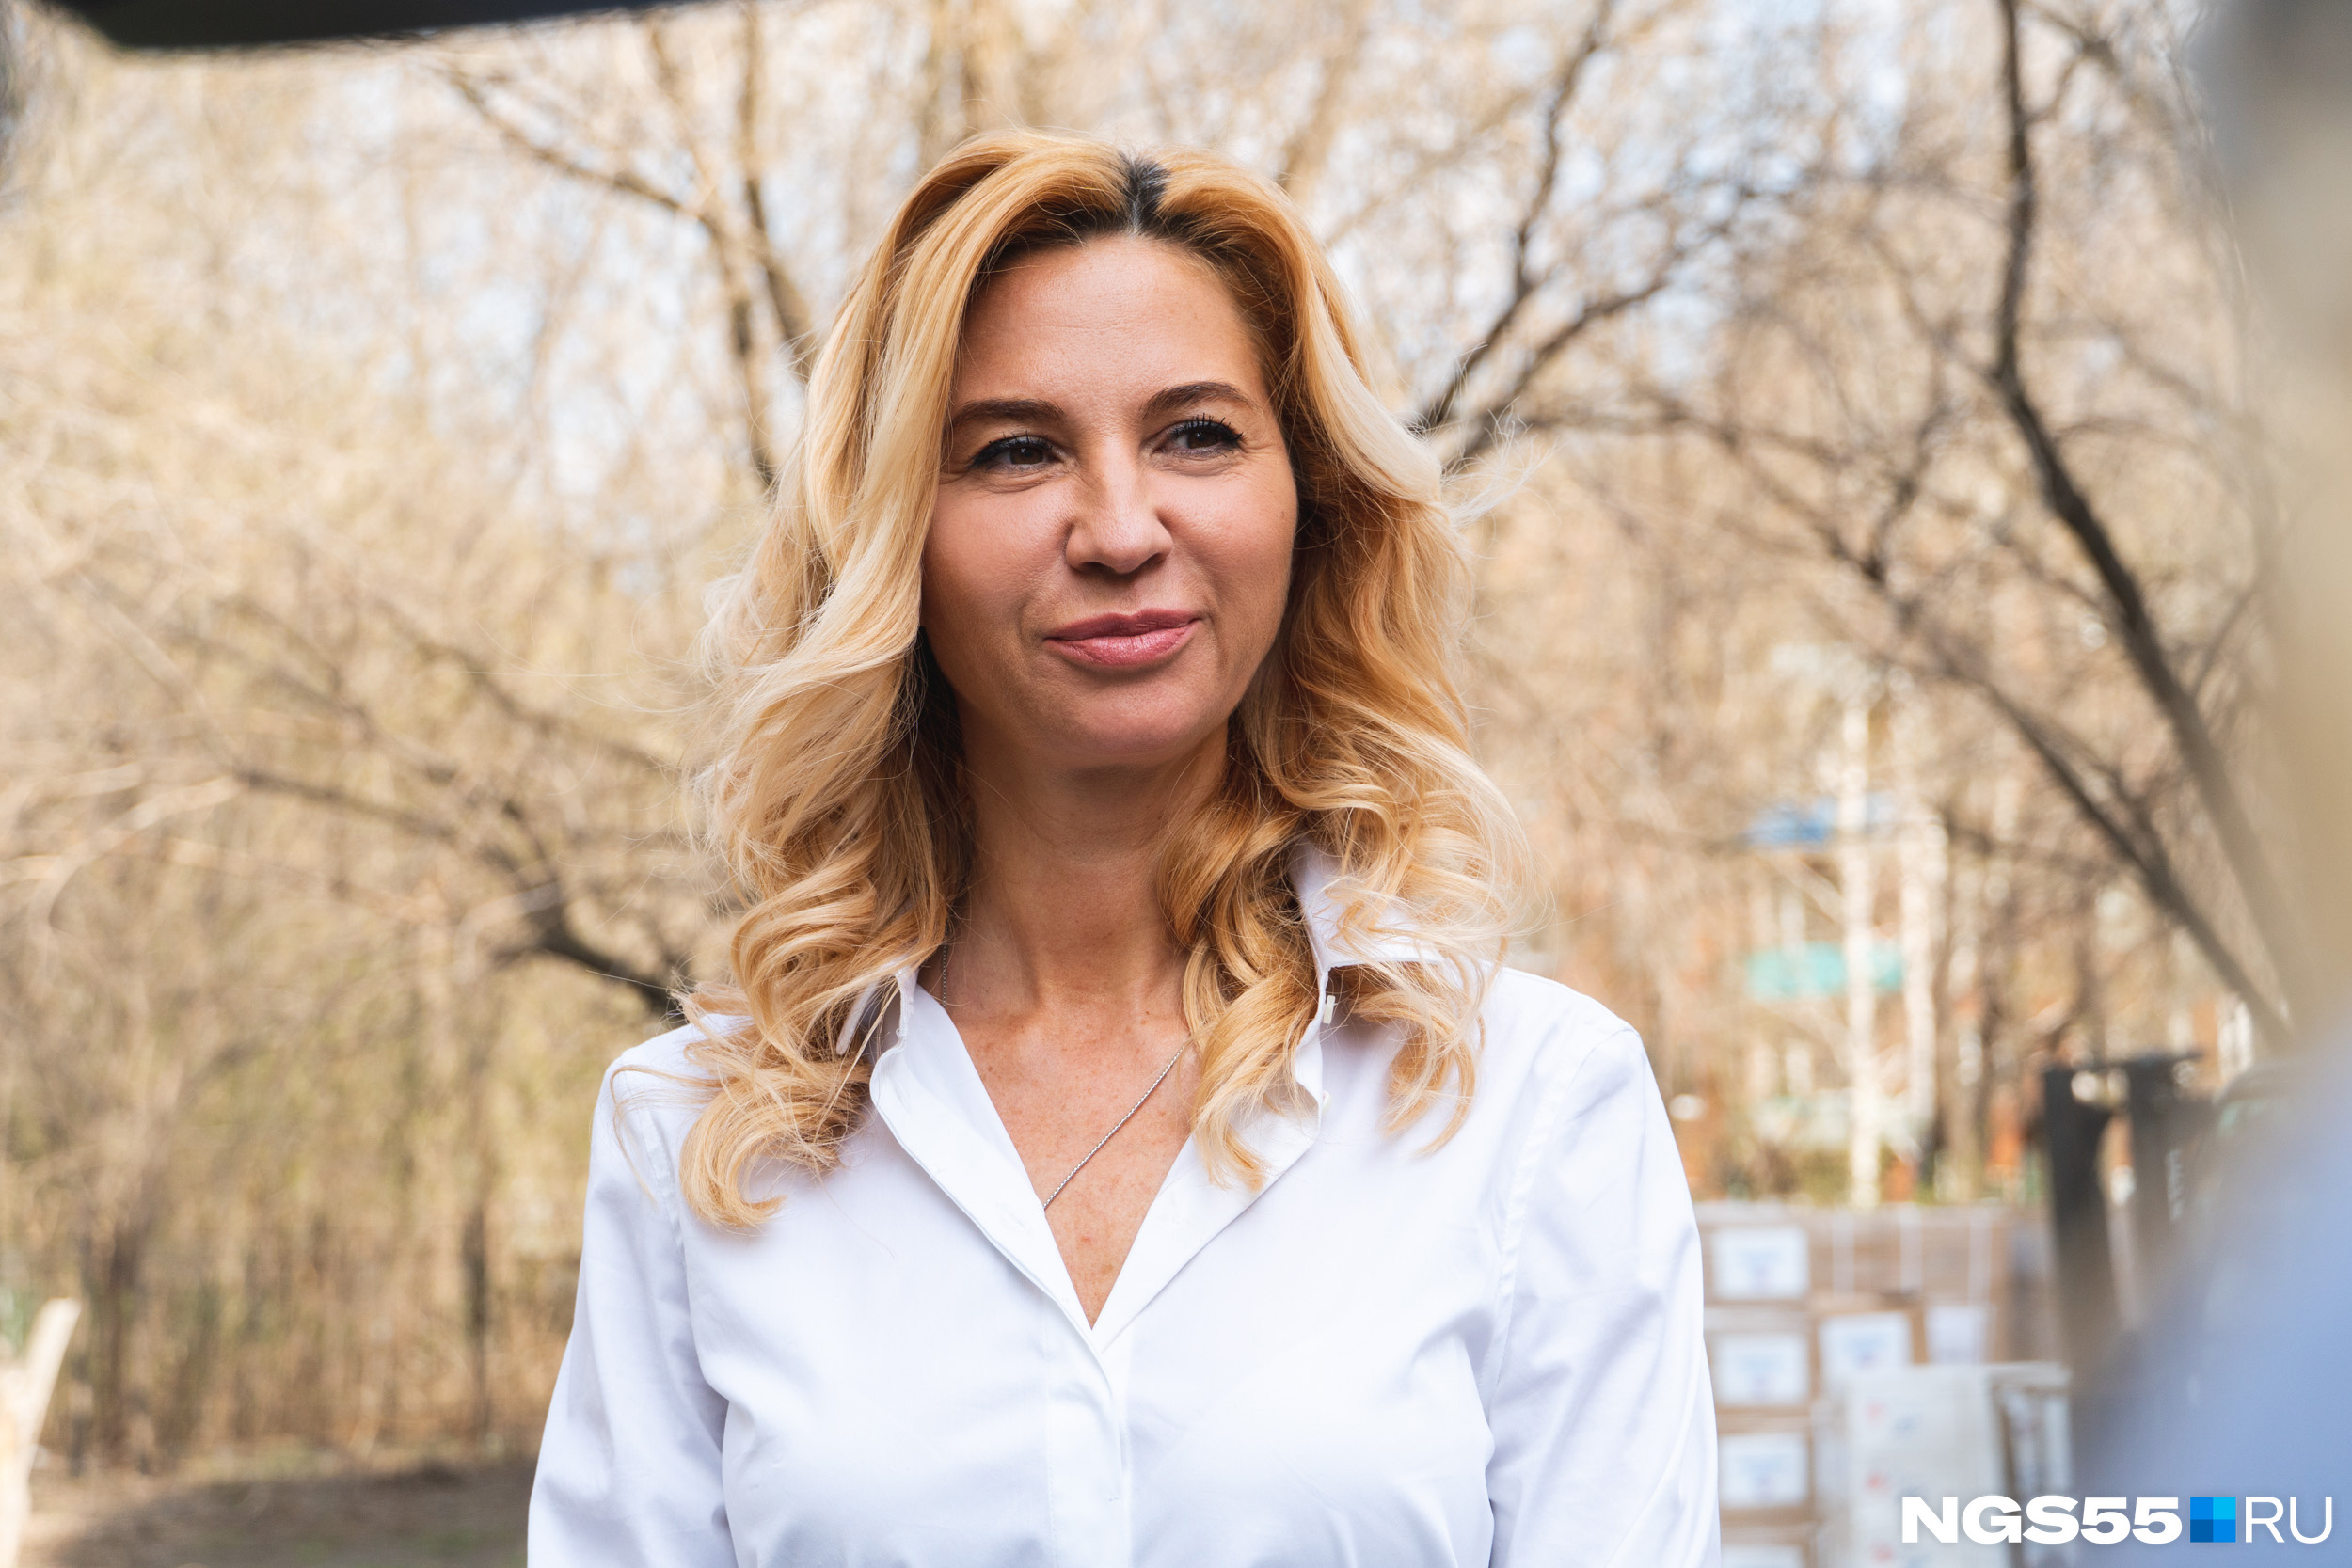 Ирина Солдатова считает, что нужно готовиться к худшему, но надеяться на лучшее